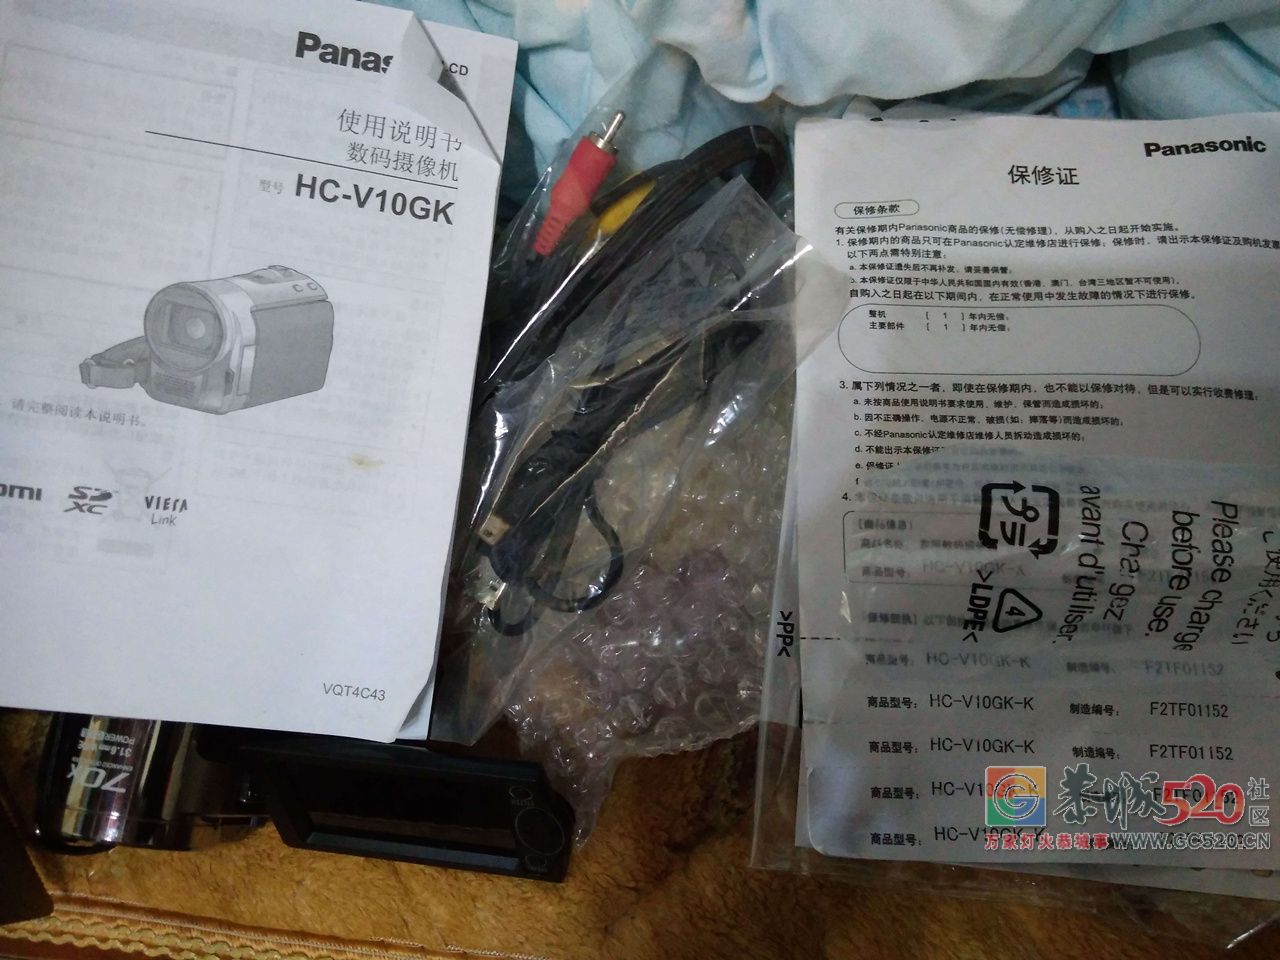 广西恭城出售一台一手自用松下 HC-V10GK高清数码摄像机【支持全国邮购和当面购买】897 / 作者:有瘾头 / 帖子ID:261788